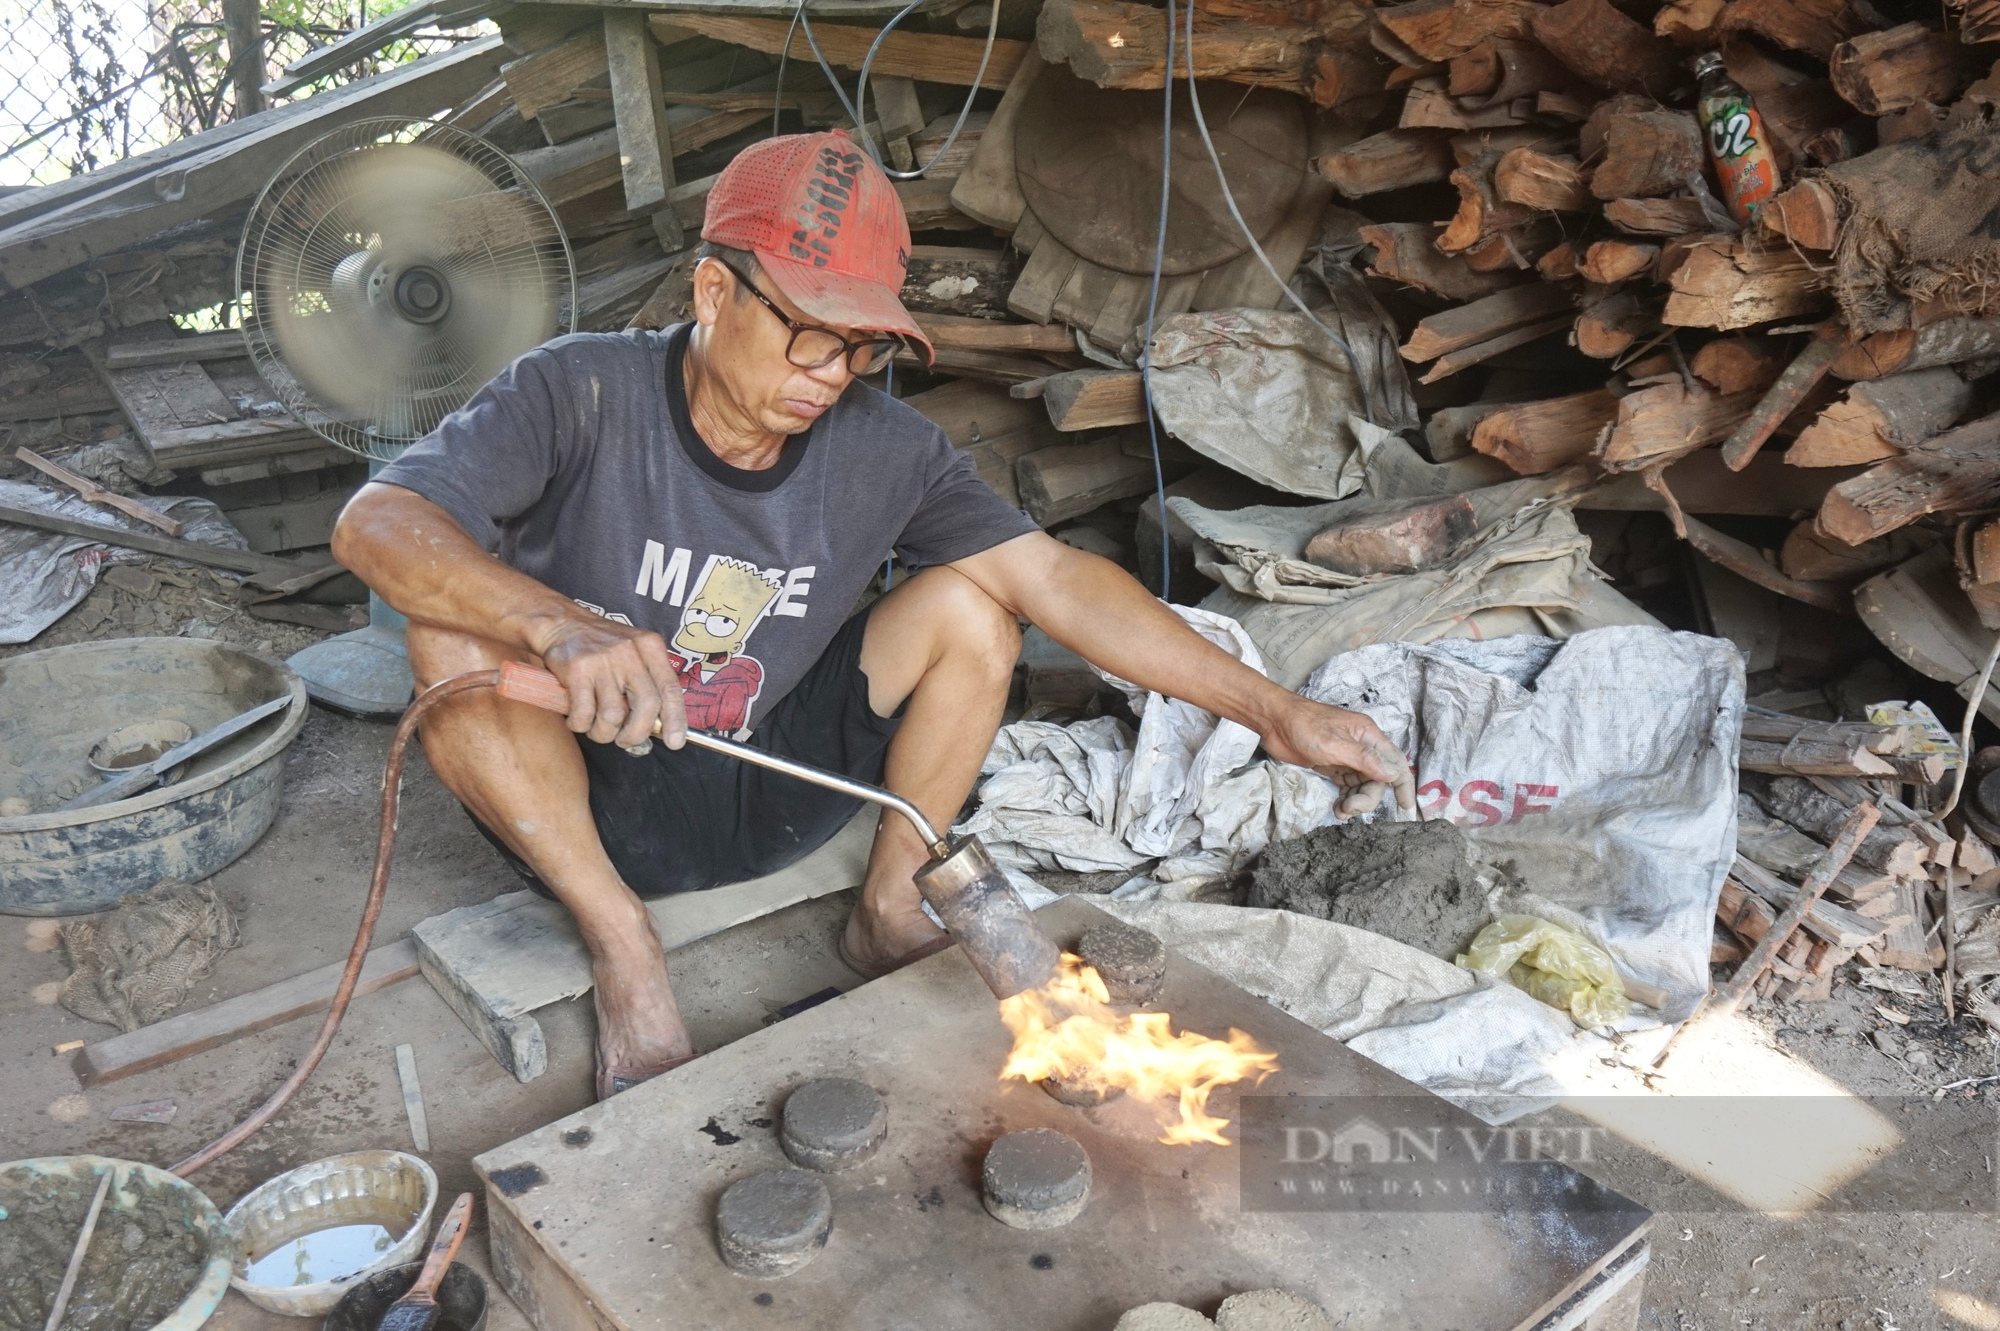 Đây là Dinh trấn Quảng Nam xưa, nổi tiếng với làng nghề truyền thống hơn 400 năm  - Ảnh 4.